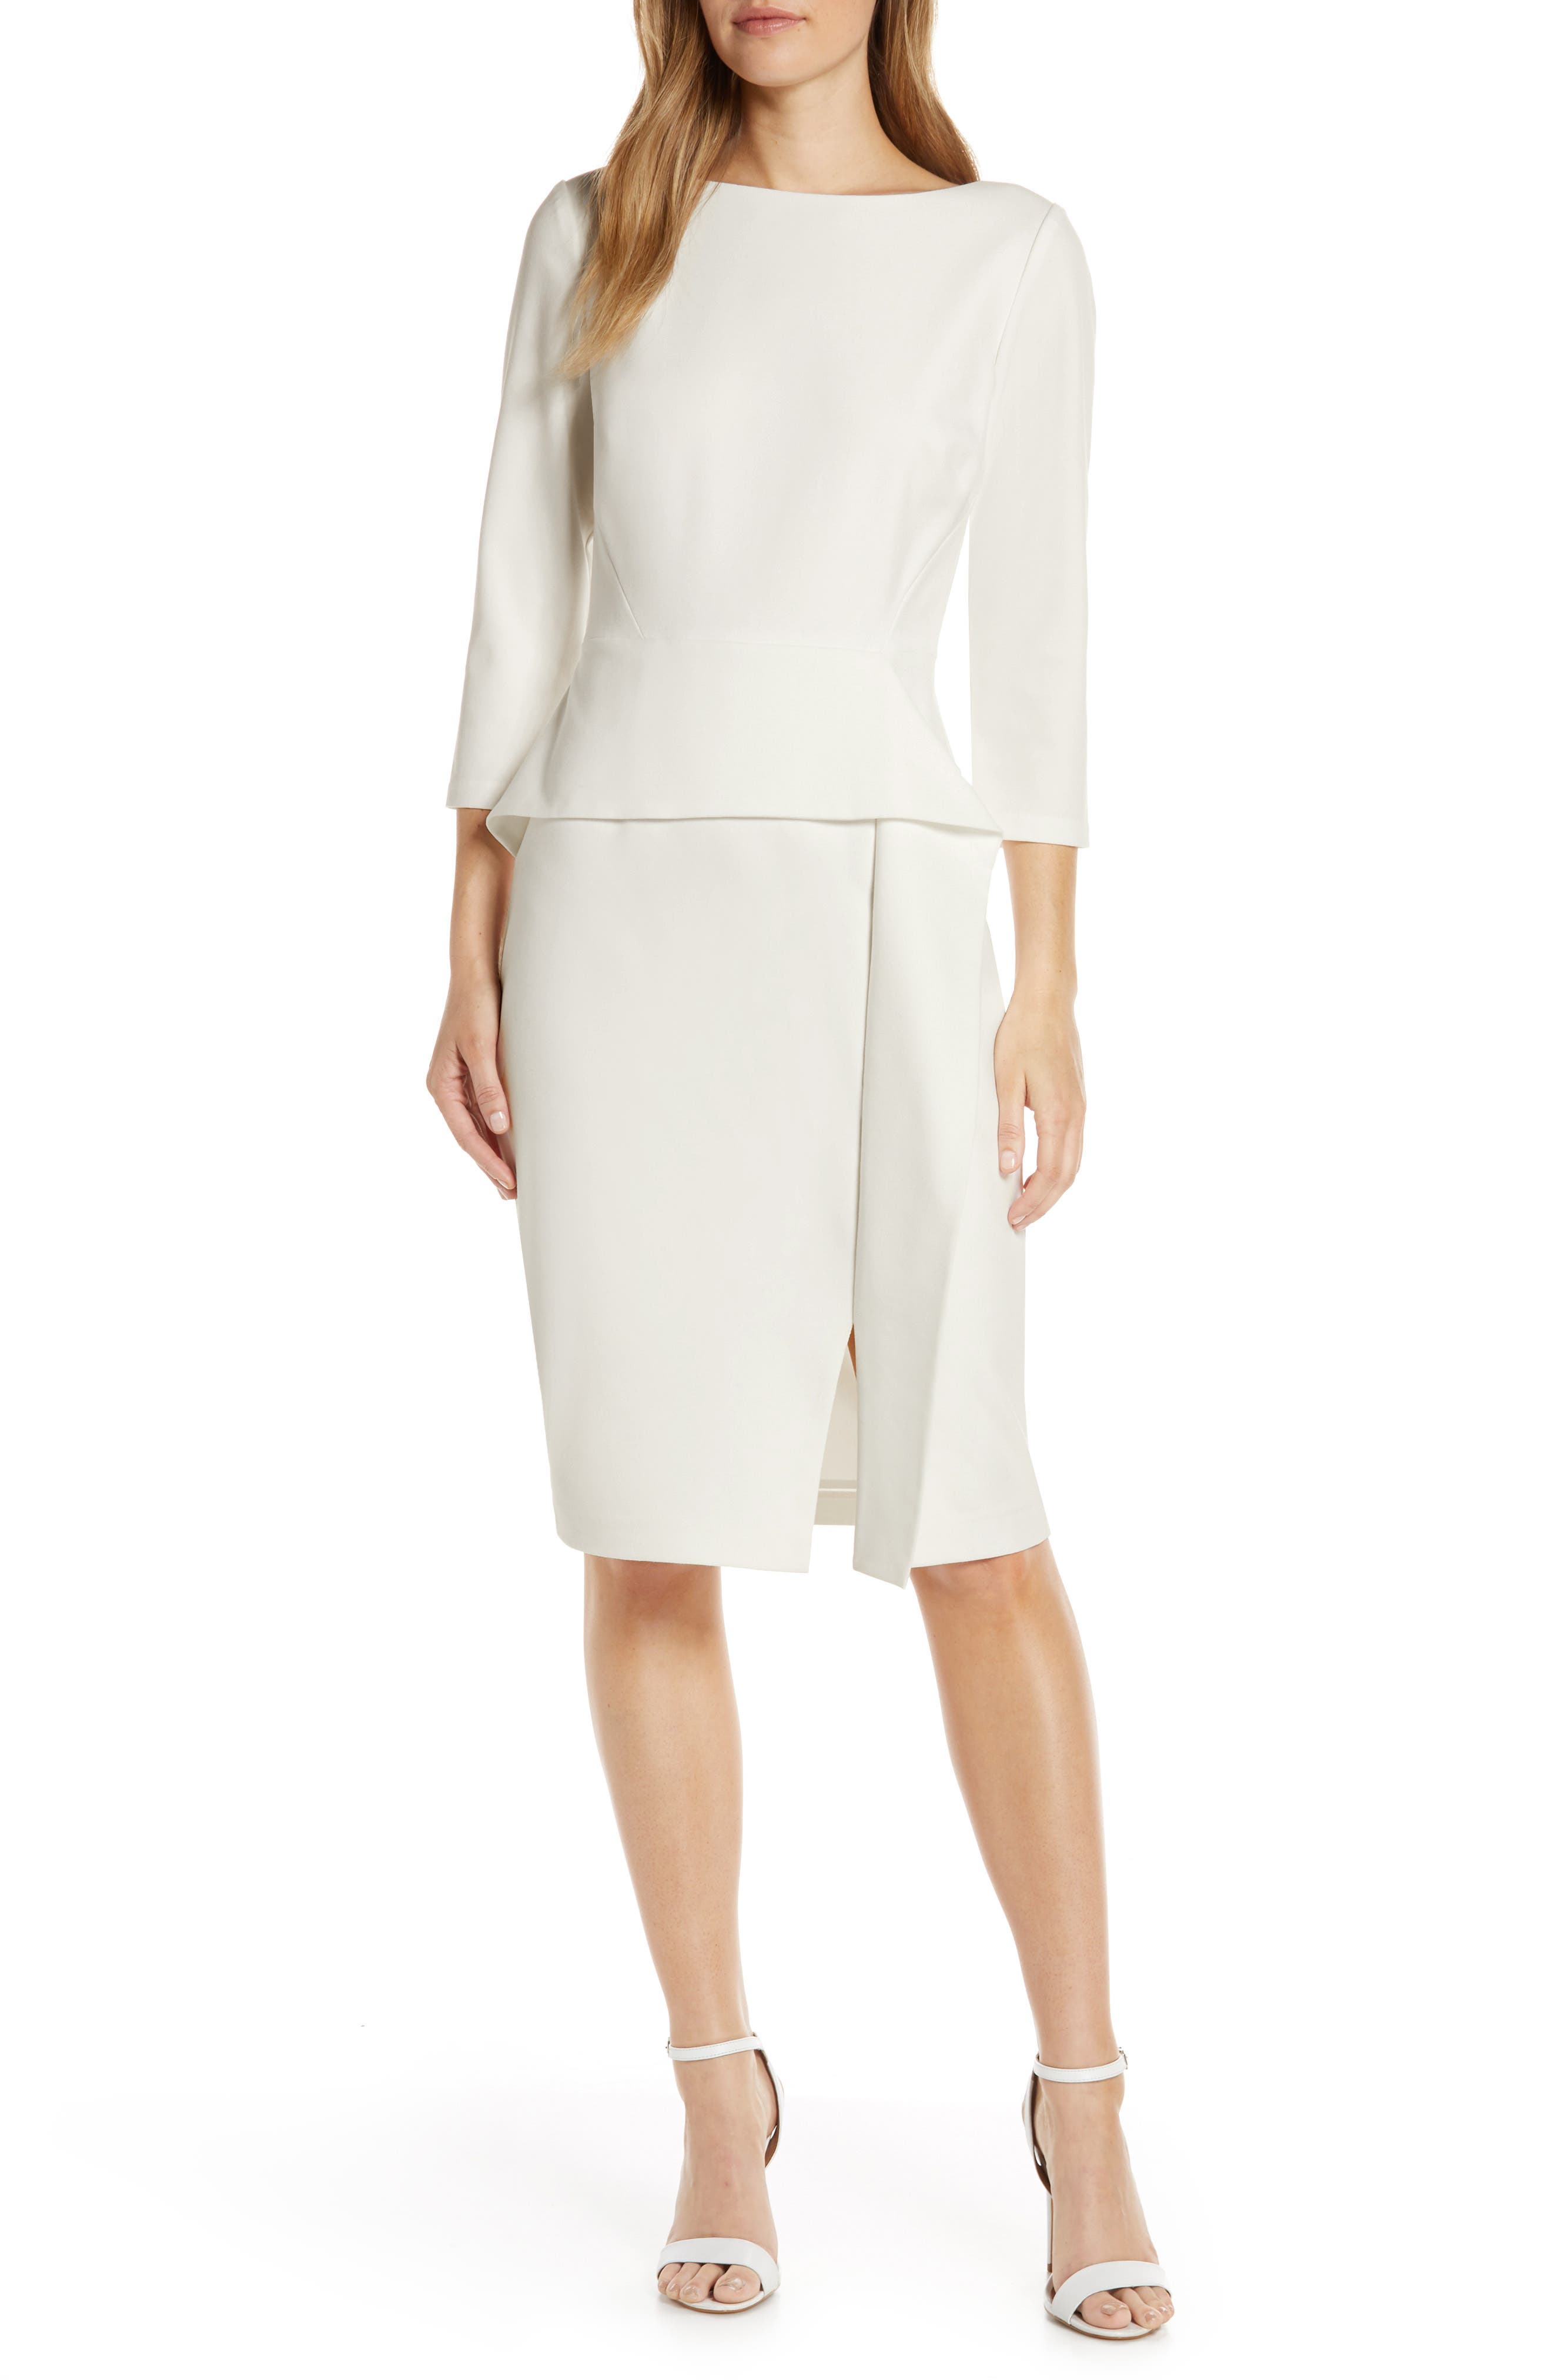 white peplum dress size 16